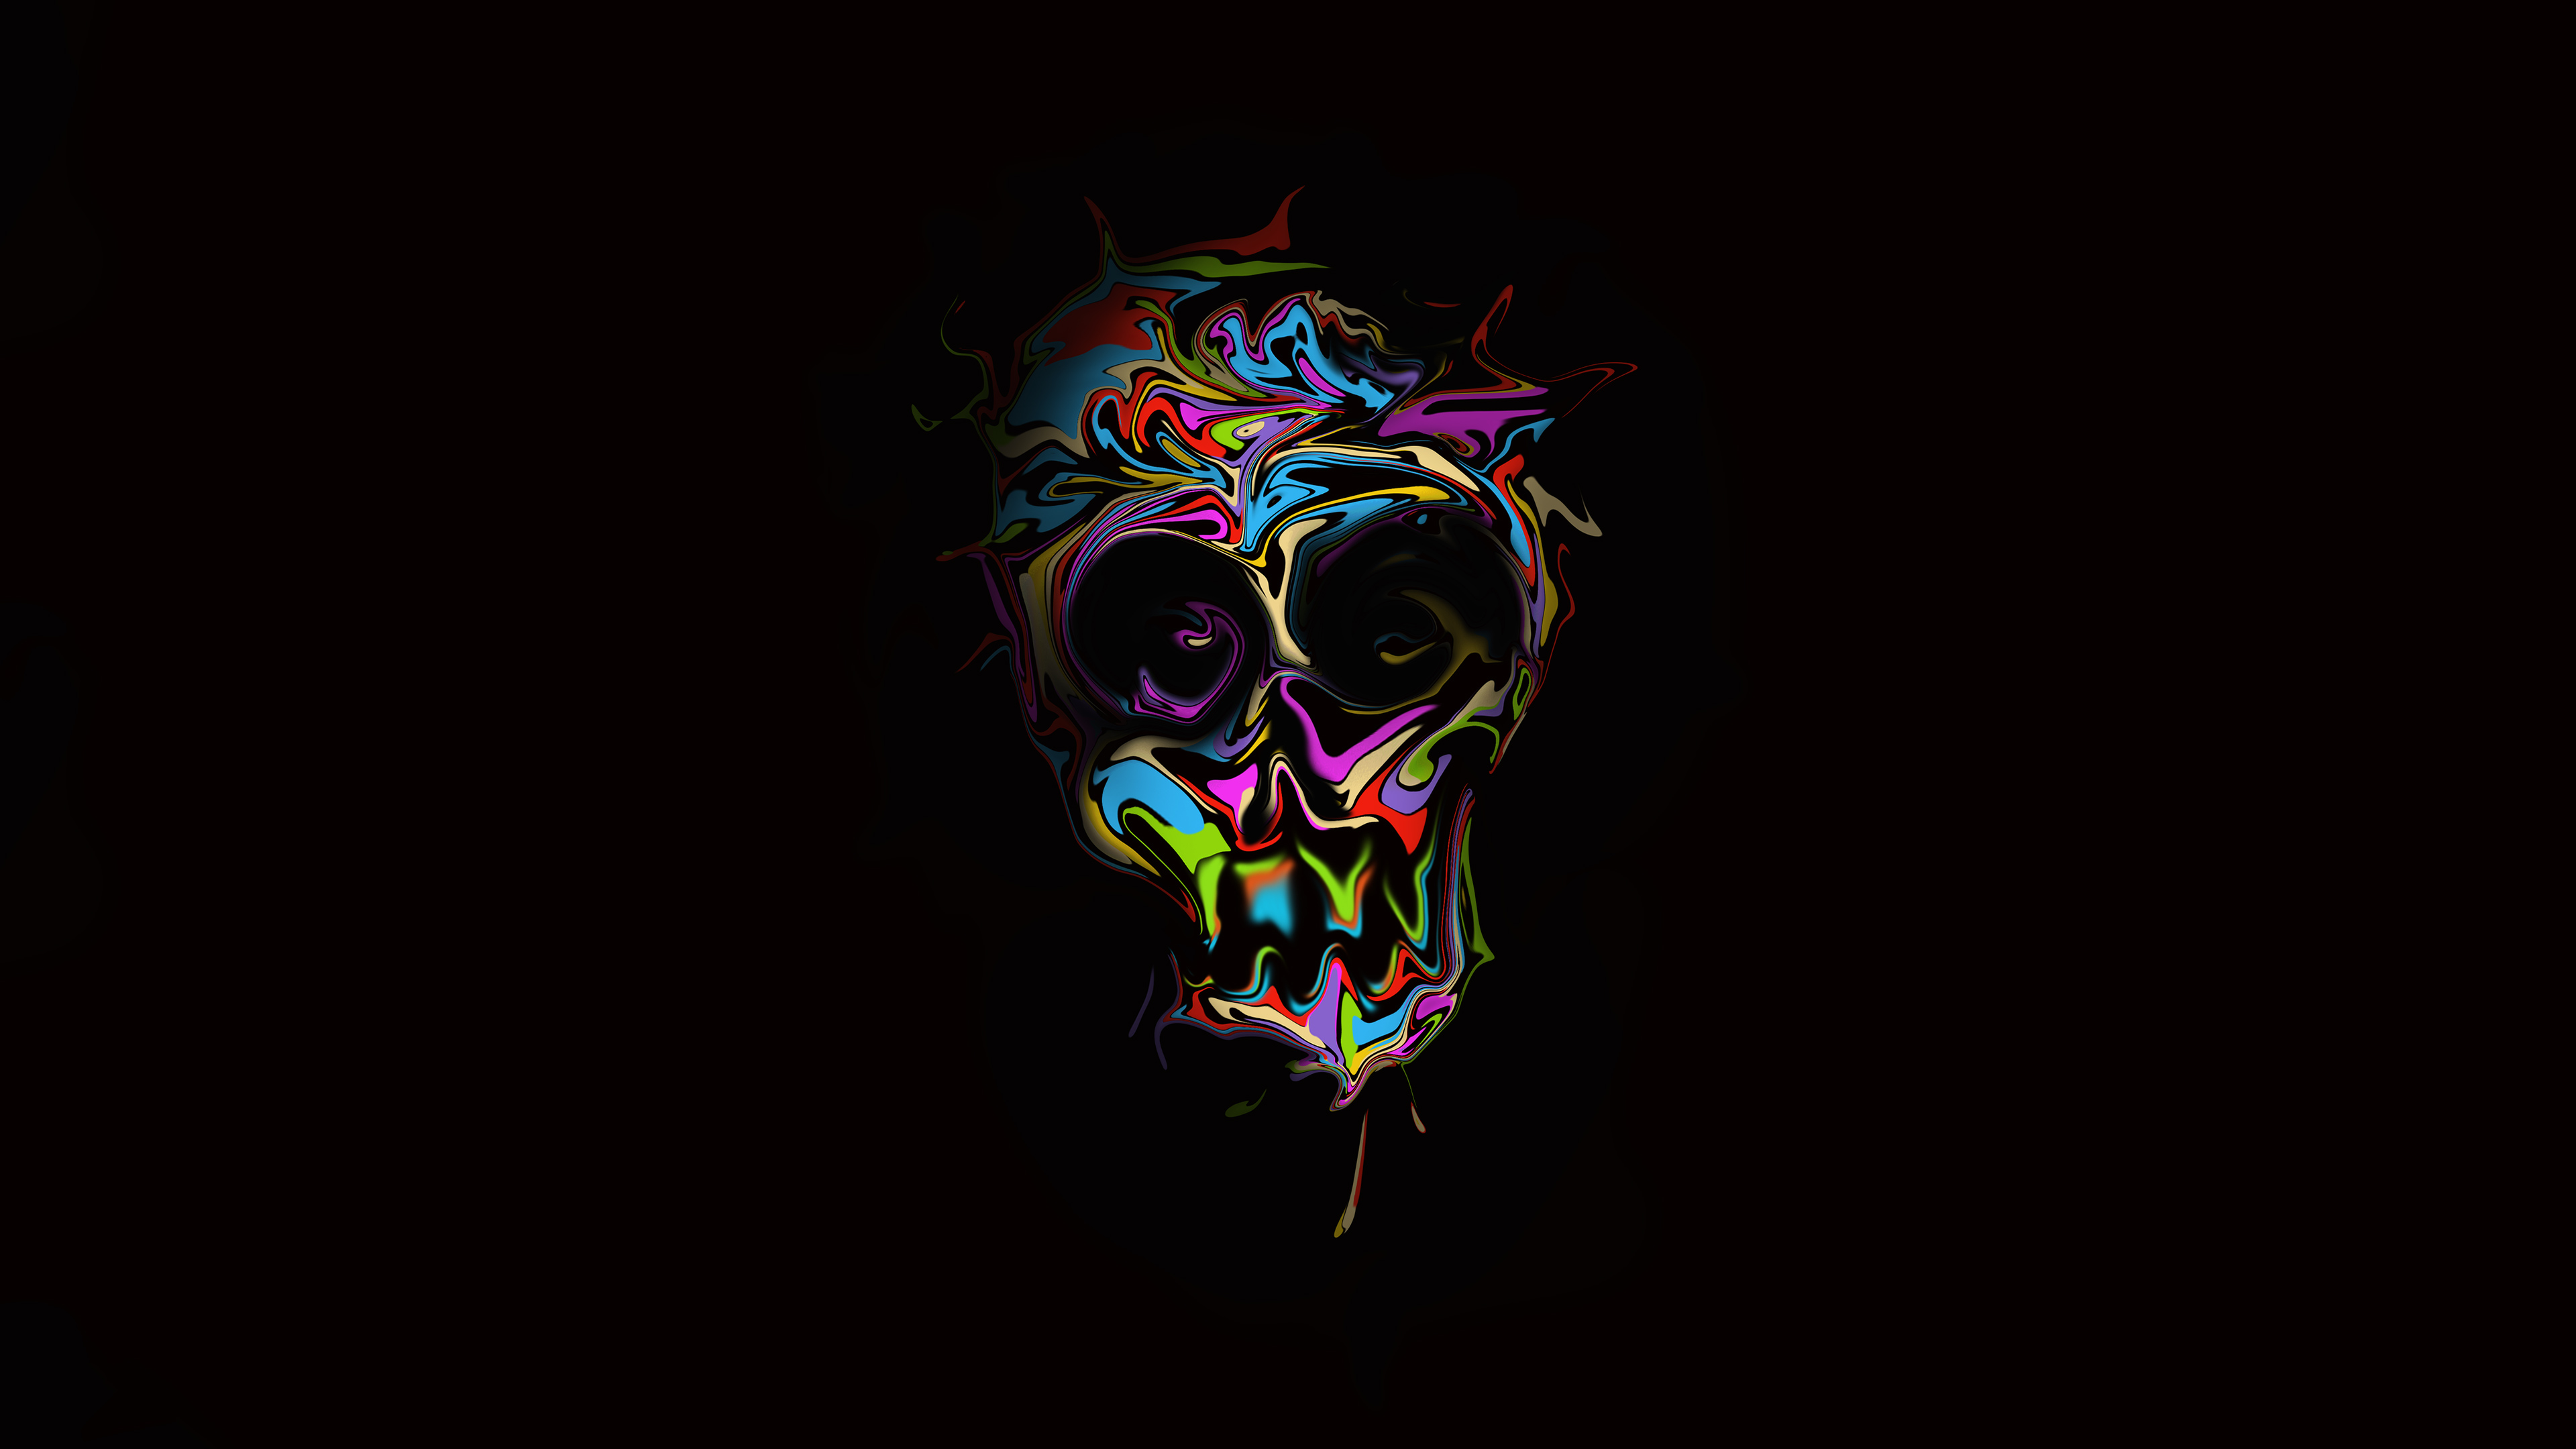 colorful skull dark art 1563222221 - Colorful Skull Dark Art - skull wallpapers, hd-wallpapers, digital art wallpapers, colorful wallpapers, artist wallpapers, 4k-wallpapers